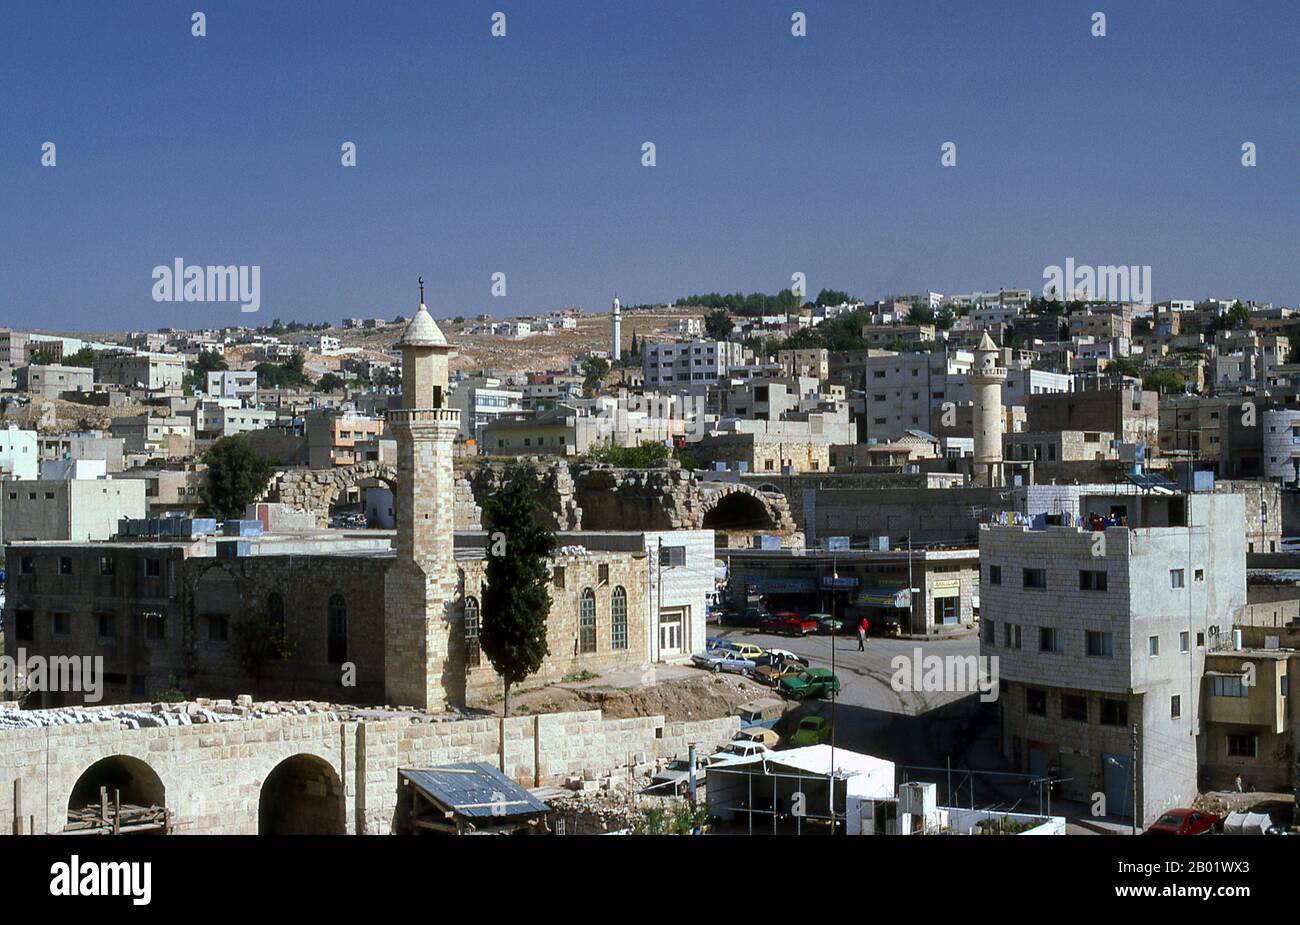 Jordanie : la ville moderne de Jerash. Jerash est le site des ruines de la ville gréco-romaine de Gerasa, également appelée Antioche sur le fleuve d'Or. Jerash est considérée comme l'une des villes romaines les plus importantes et les mieux préservées du proche-Orient. C'était une ville de la Décapole. Des fouilles récentes montrent que Jerash était déjà habité pendant l'âge du bronze (3200-1200 av. J.-C.). Après la conquête romaine en 63 av. J.-C. Jerash et les terres qui l'entourent ont été annexés par la province romaine de Syrie, et ont rejoint plus tard les villes de la Décapole. Banque D'Images